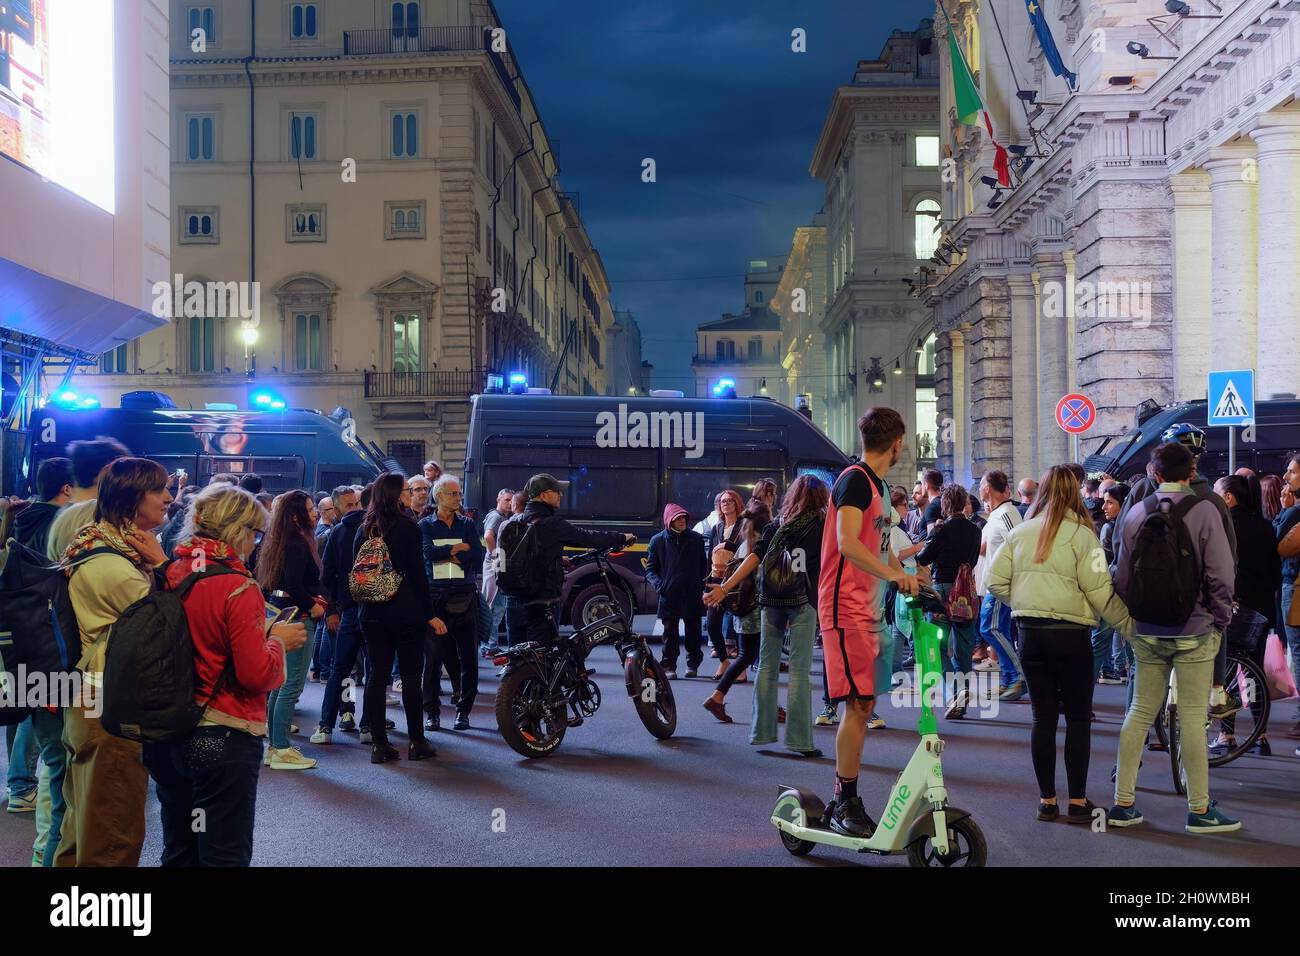 Roma, Italia - 9 ottobre 2021: Protesta anti-vax contro l'estensione del sistema di pass sanitario COVID-19. Radunata folla di passaggio prima di veicoli di polizia sommossa, con i manifestanti contro il verde passare dietro. Foto Stock